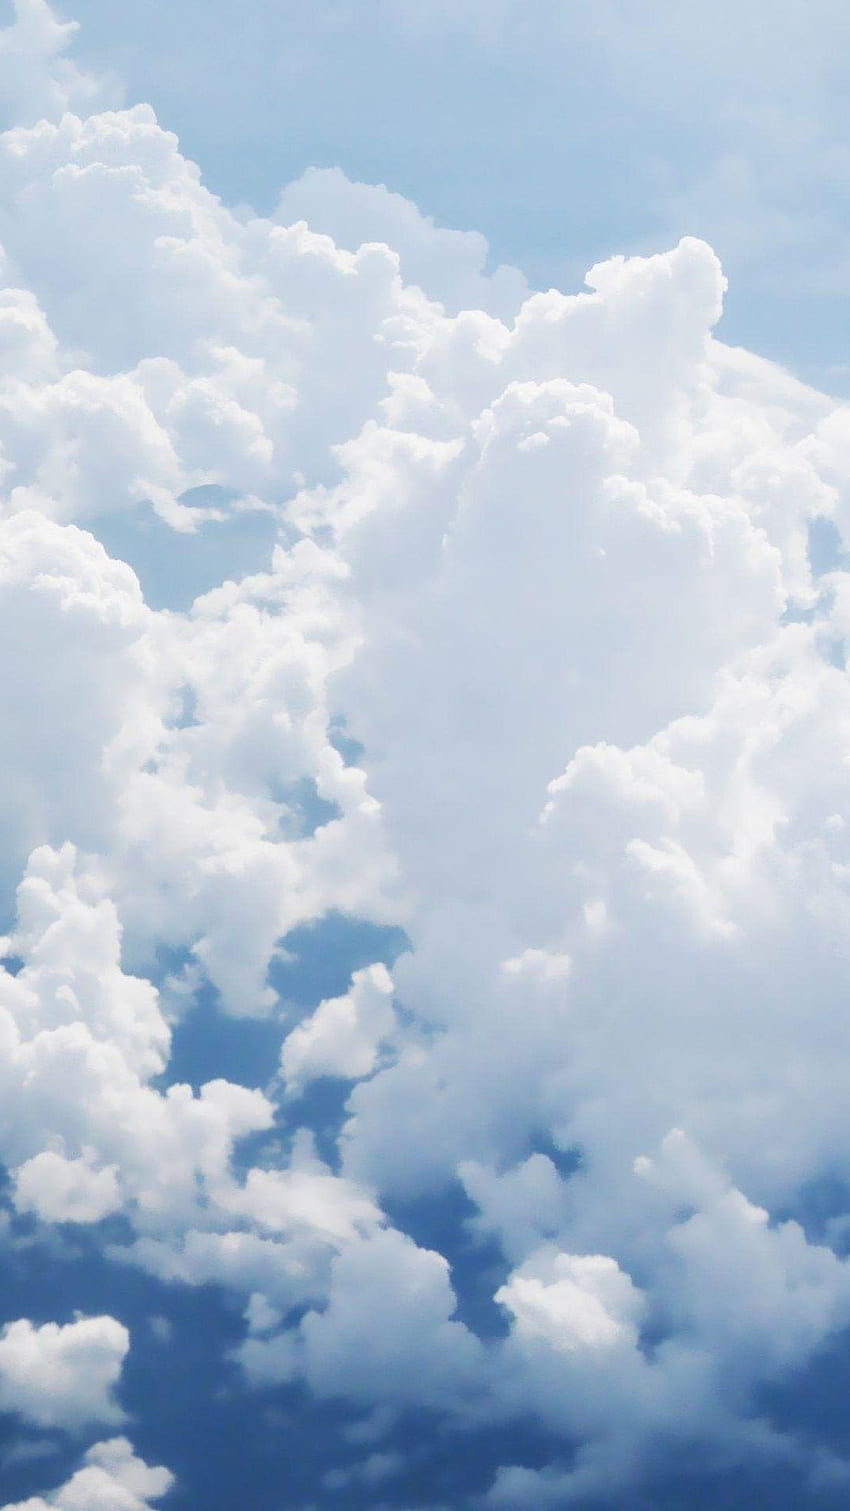 Sky, Cloud, Daytime, Cumulus, Blue, White. Clouds iphone, Blue iphone, iPhone sky HD phone wallpaper